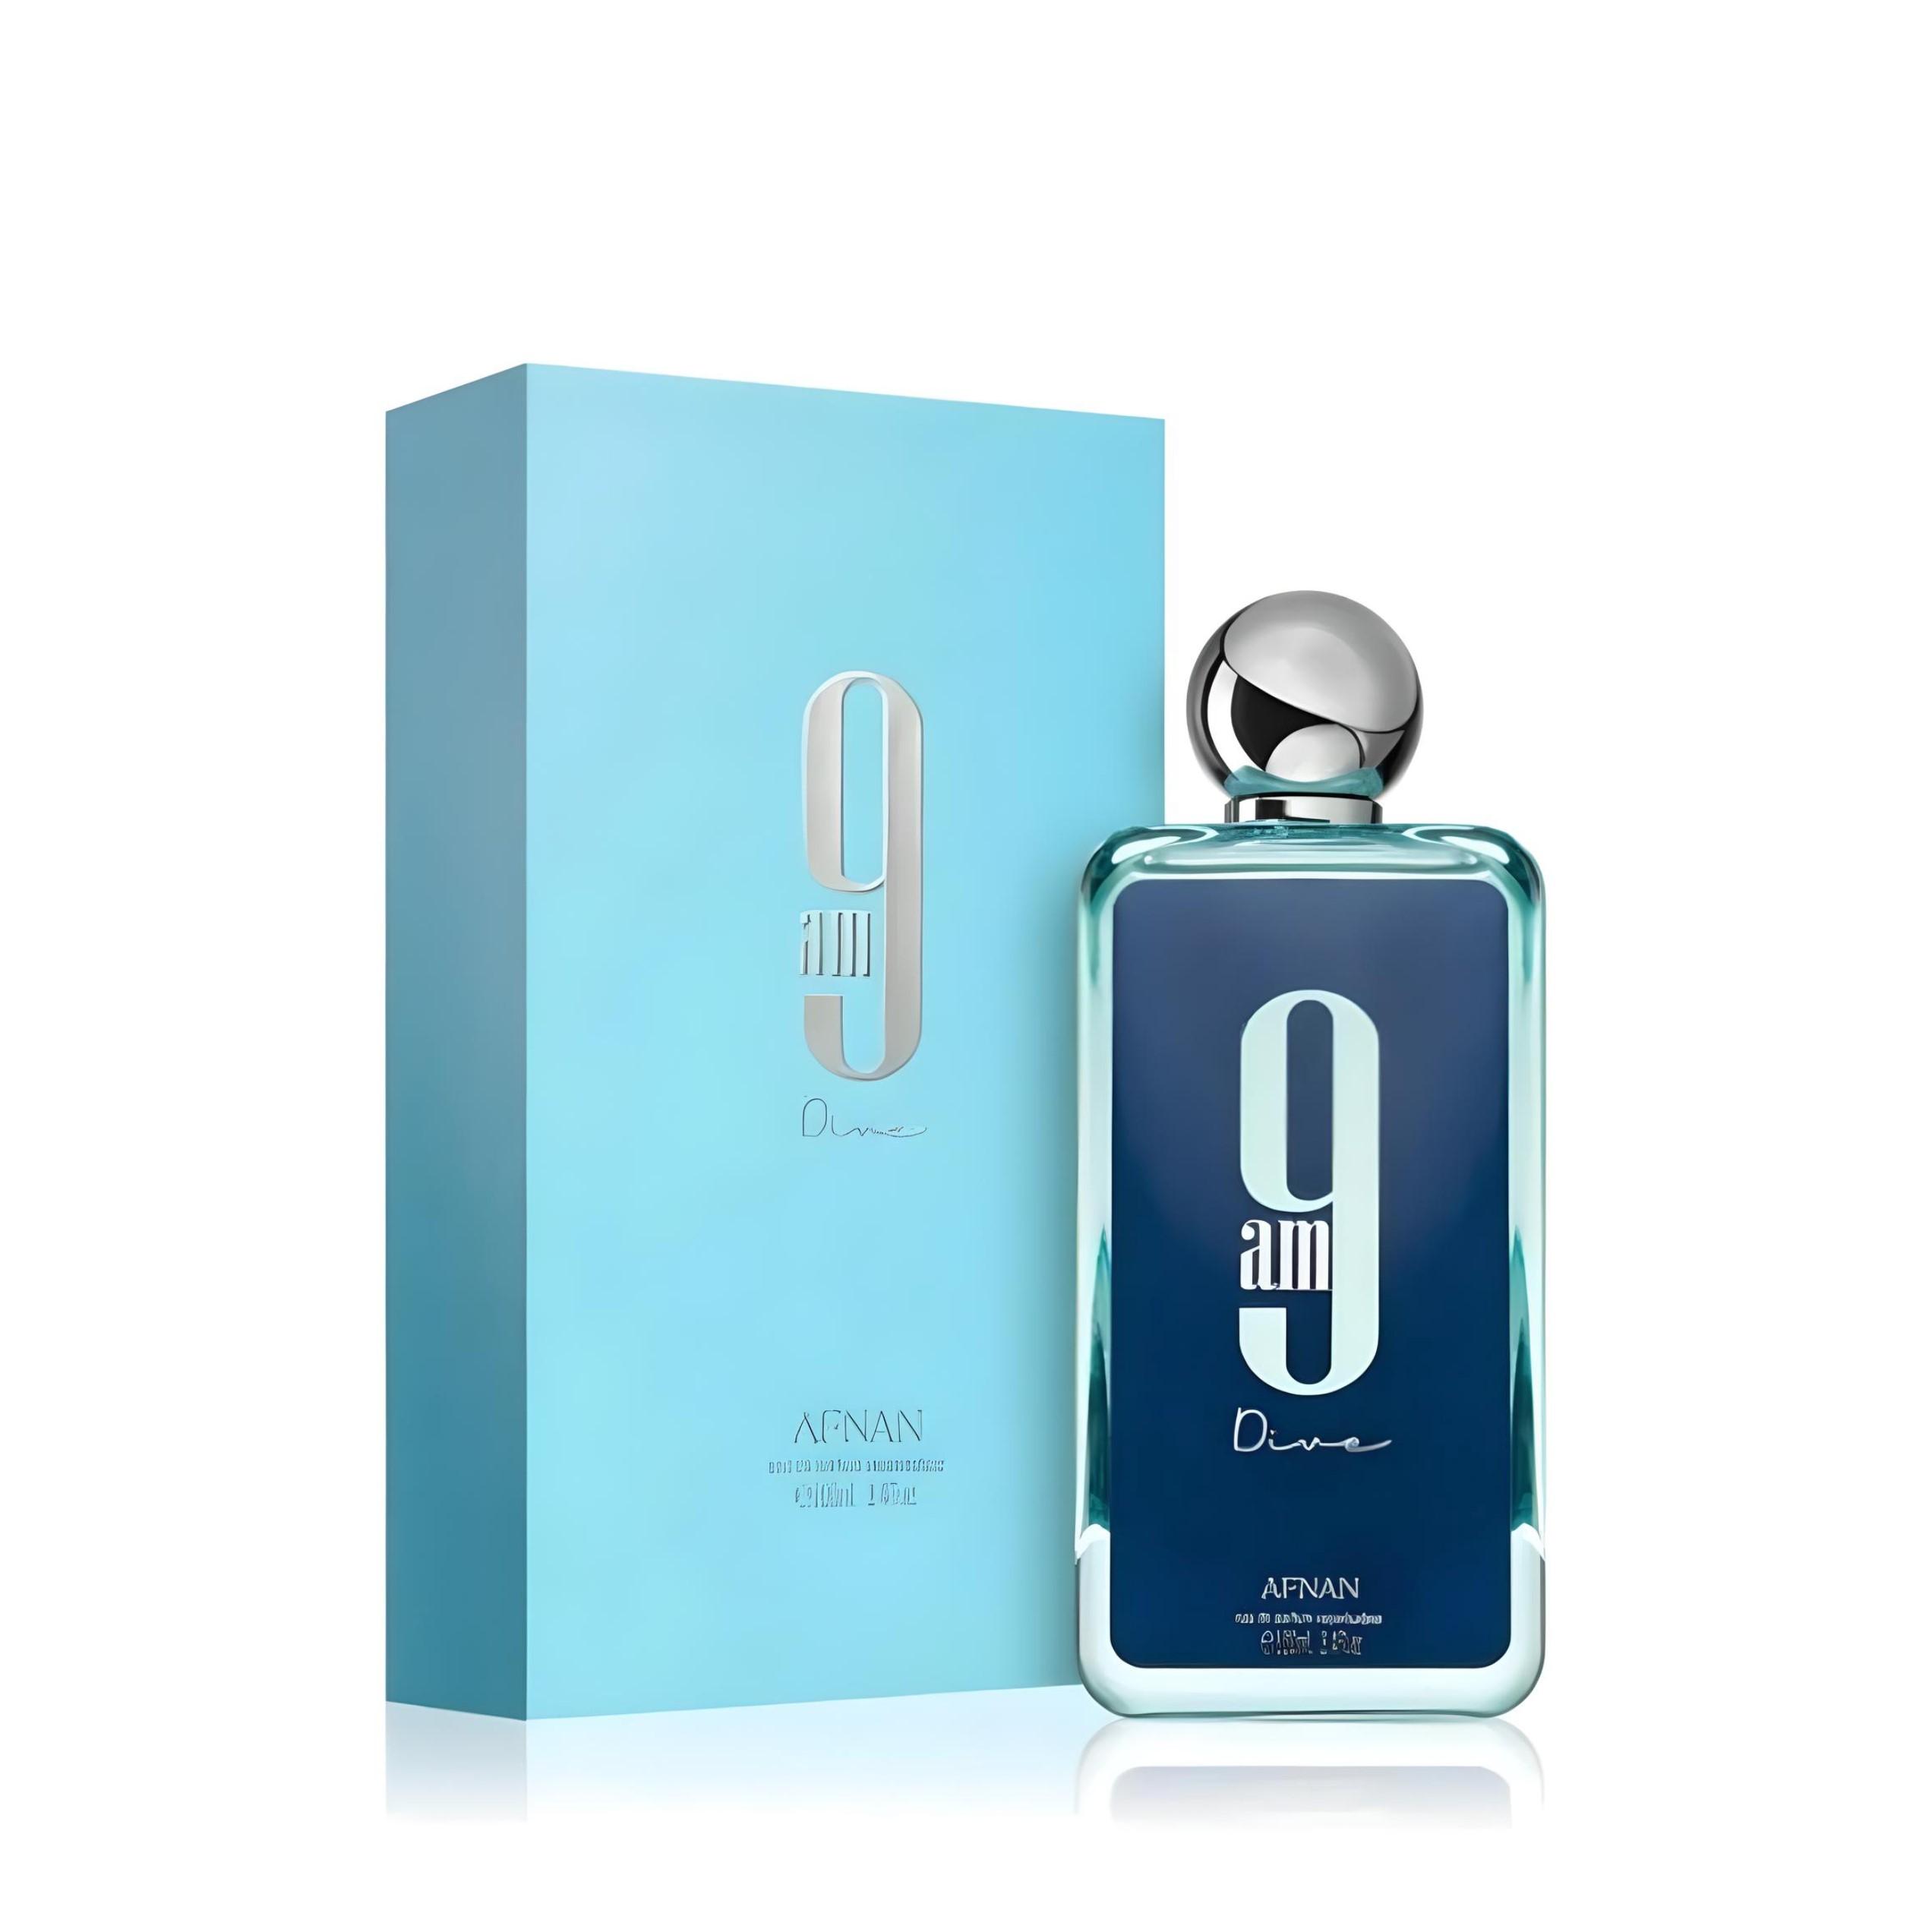 9Am Dive Femme Eau De Parfum 100Ml By Afnan